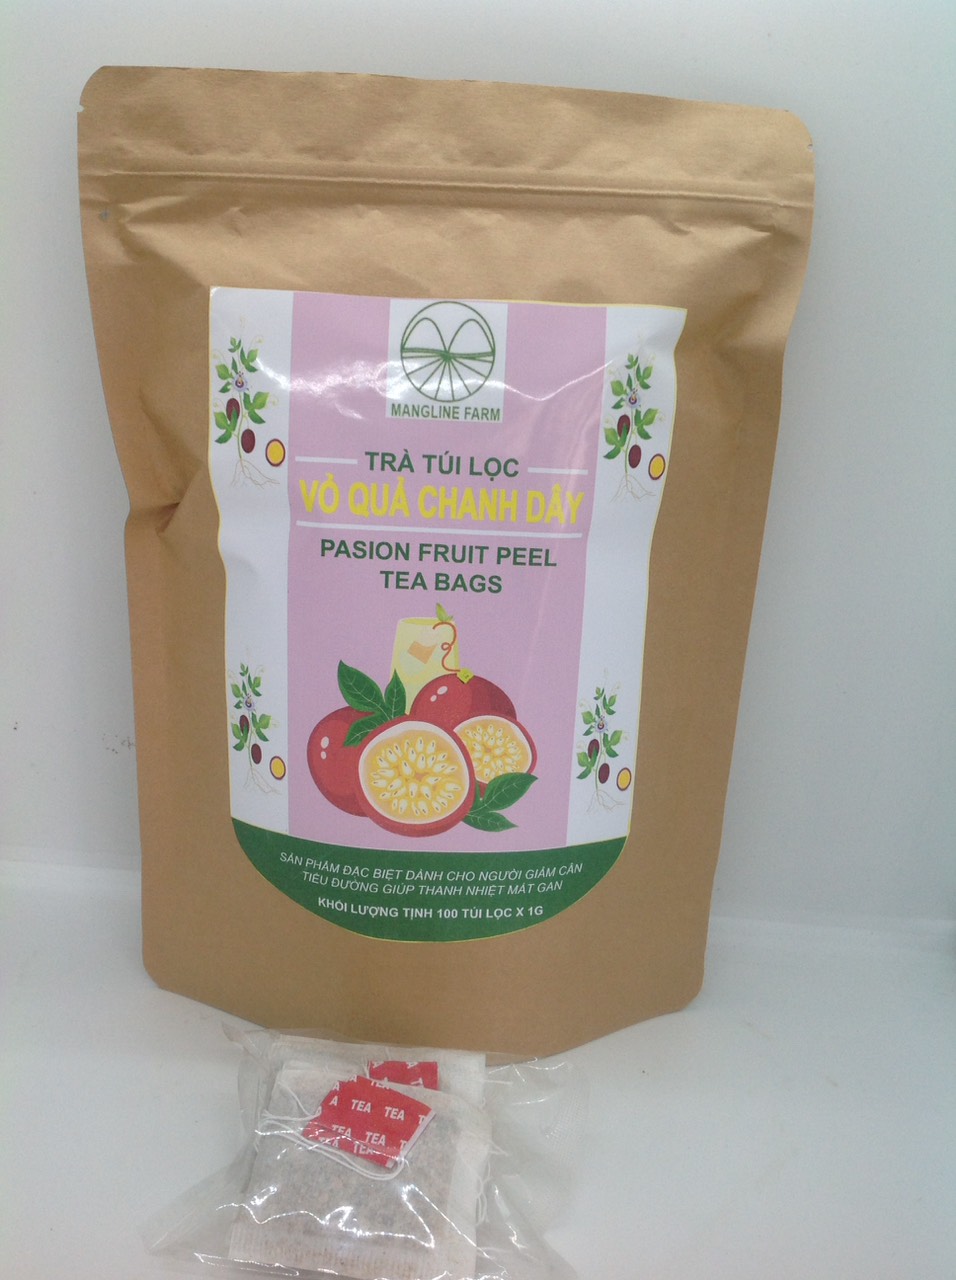 Sản phẩm mới độc lạ trà vỏ chanh dây túi lọc mangline farm đà lạt 100 túi - ảnh sản phẩm 8